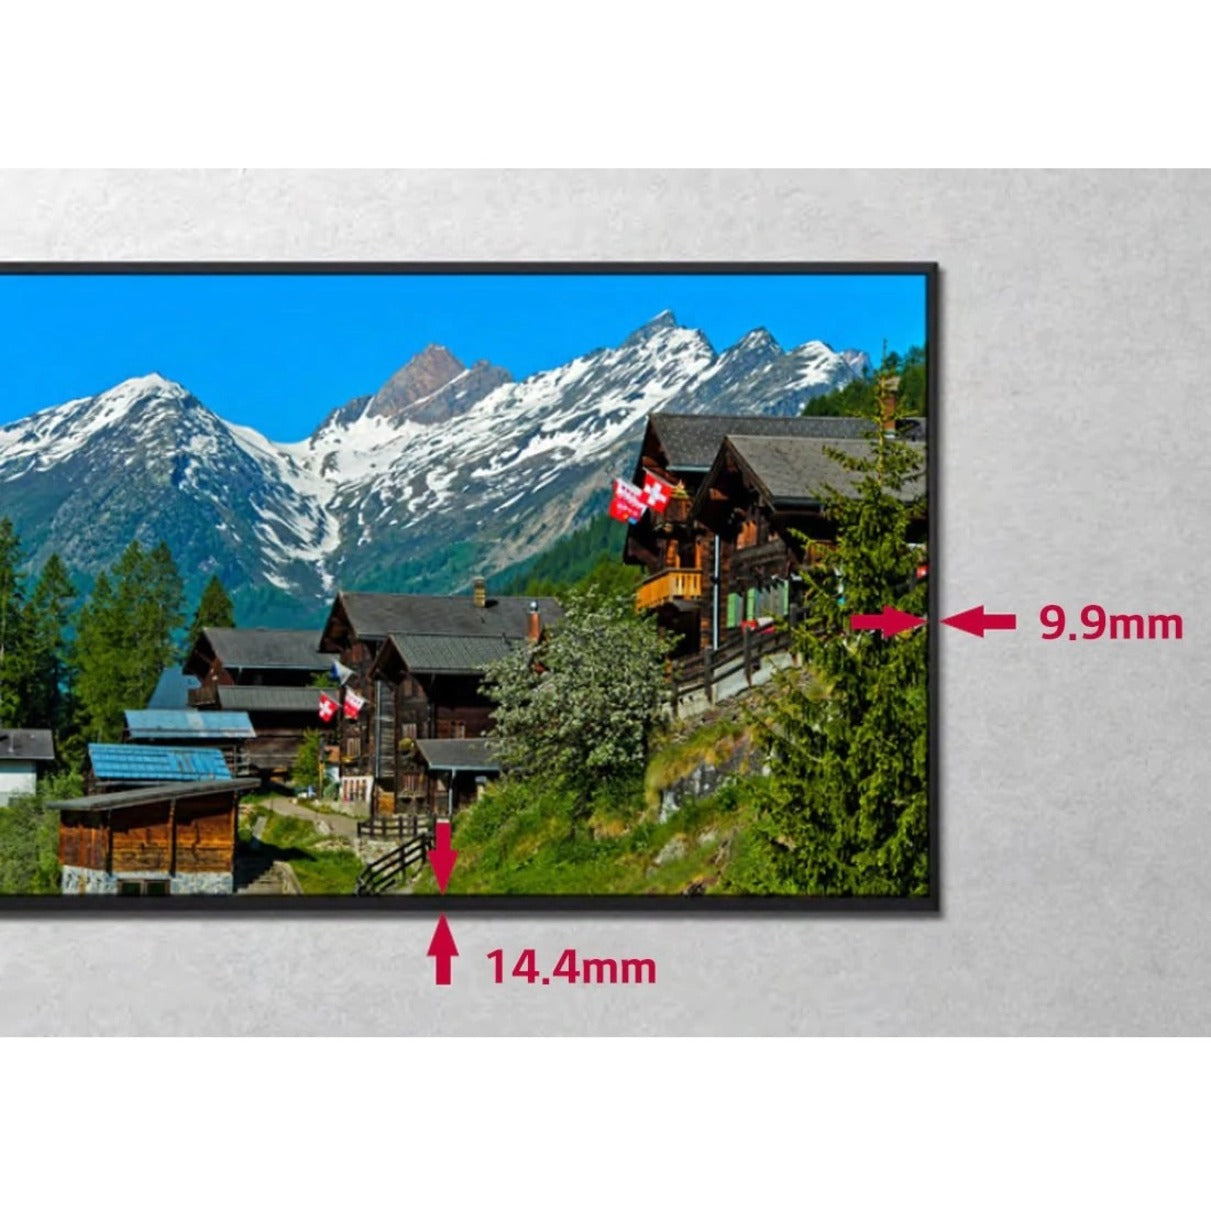 LG 49UM3DG-B Digital Signage Display, 49" LCD, 4K UHD, WebOS, 350 Nit Brightness, 10-bit Color Depth, 95% BT.709 Color Gamut